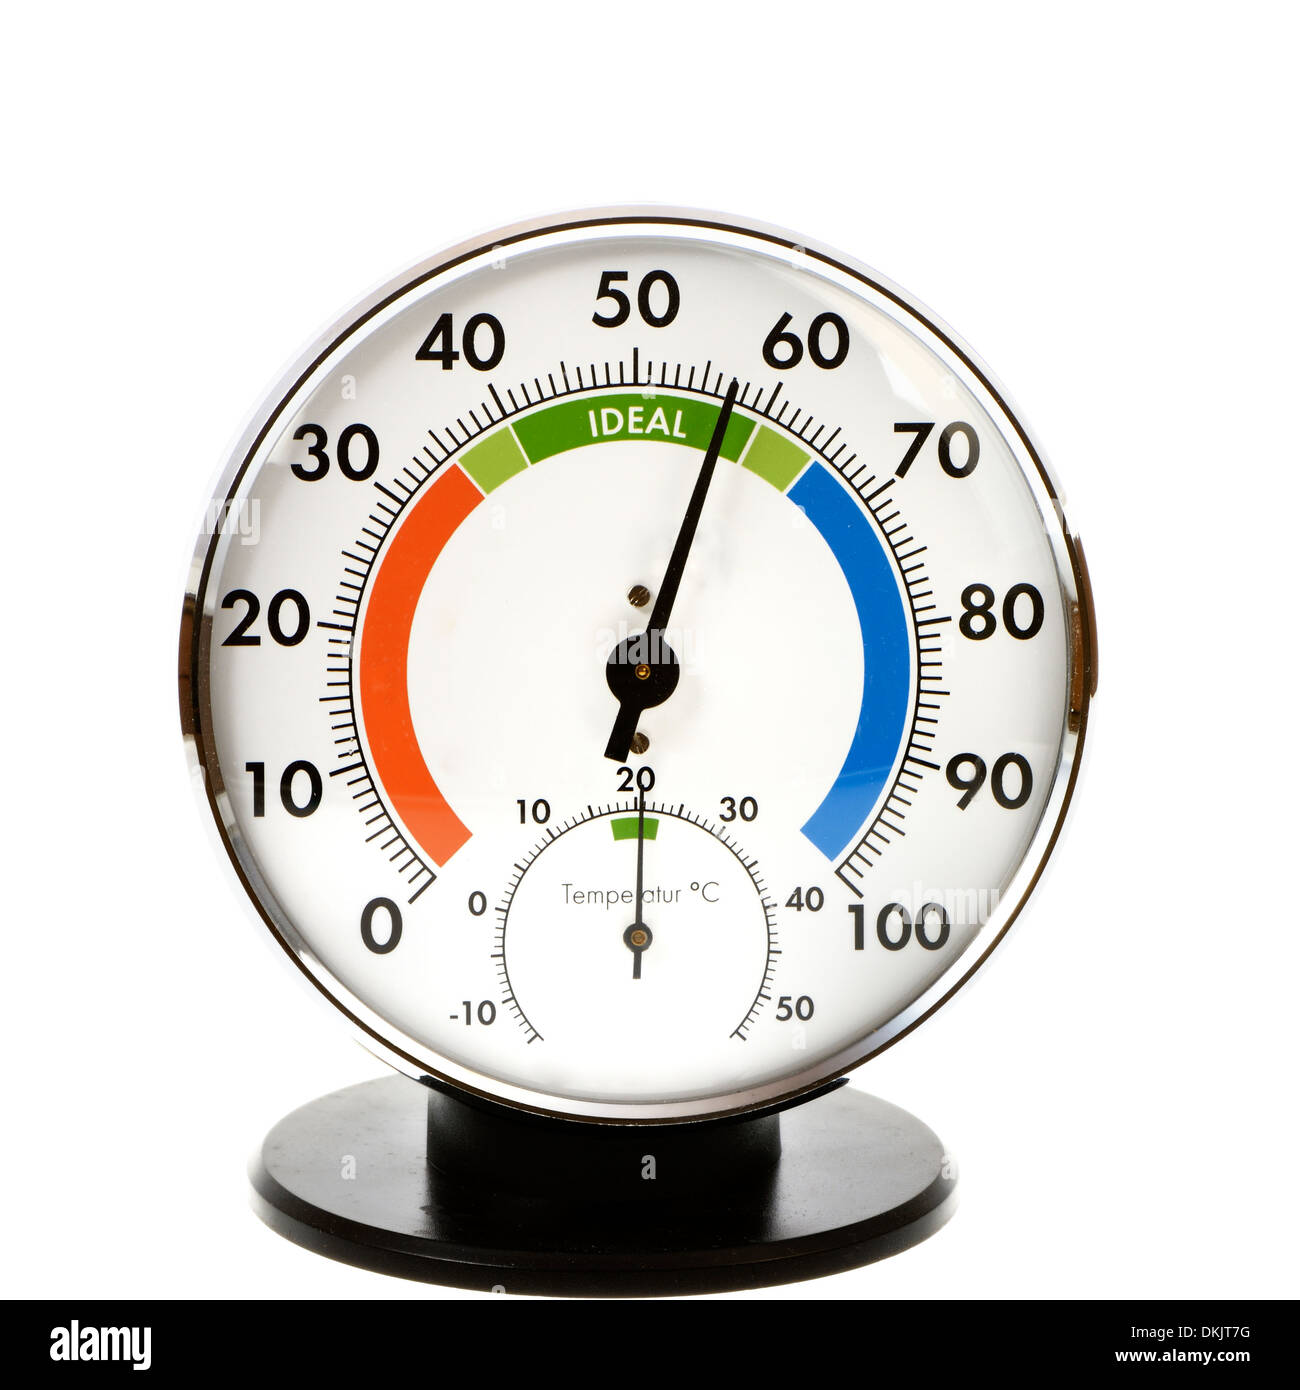 Igrometro analogico e termometro - è tutto nel verde Foto stock - Alamy